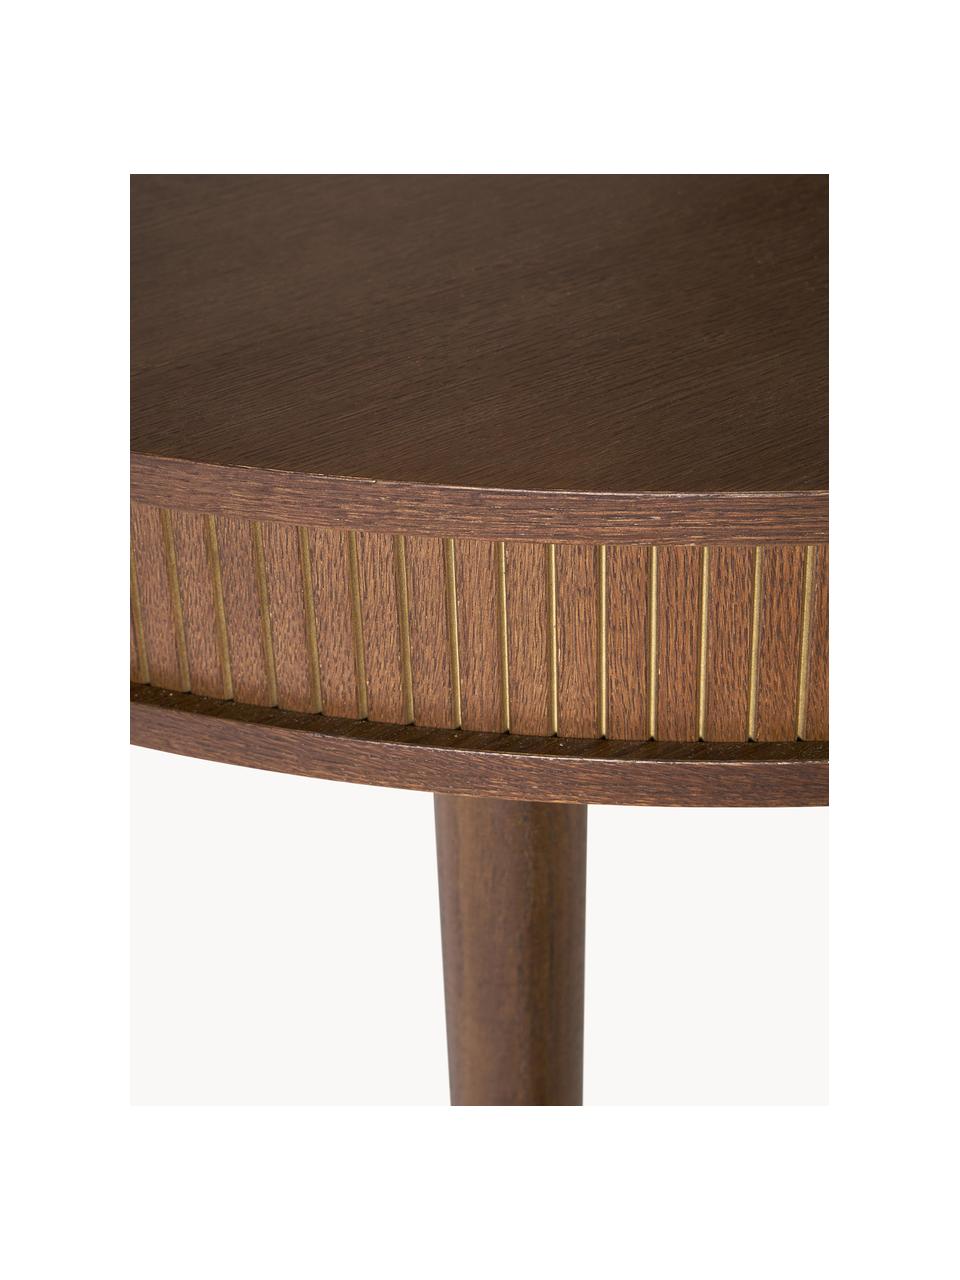 Okrągły stół do jadalni Calary, Ø 120 cm, Blat: płyta pilśniowa średniej , Nogi: drewno dębowe, Drewno naturalne lakierowane na ciemnobrązowo, Ø 120 cm